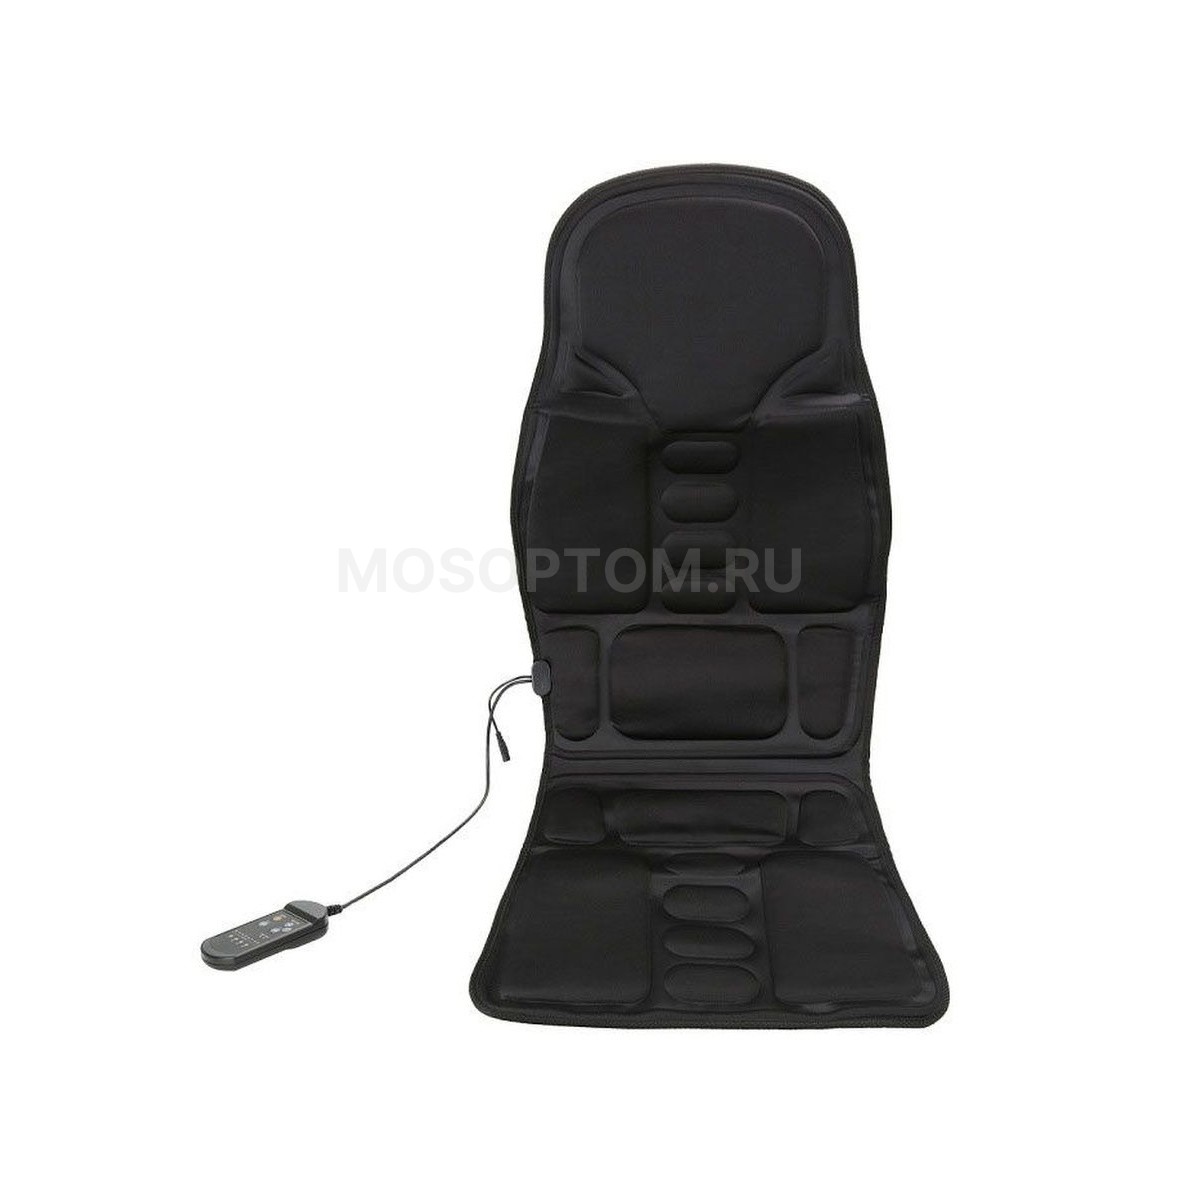 Массажная накидка Massage Robotic Cushion FZ-118 оптом